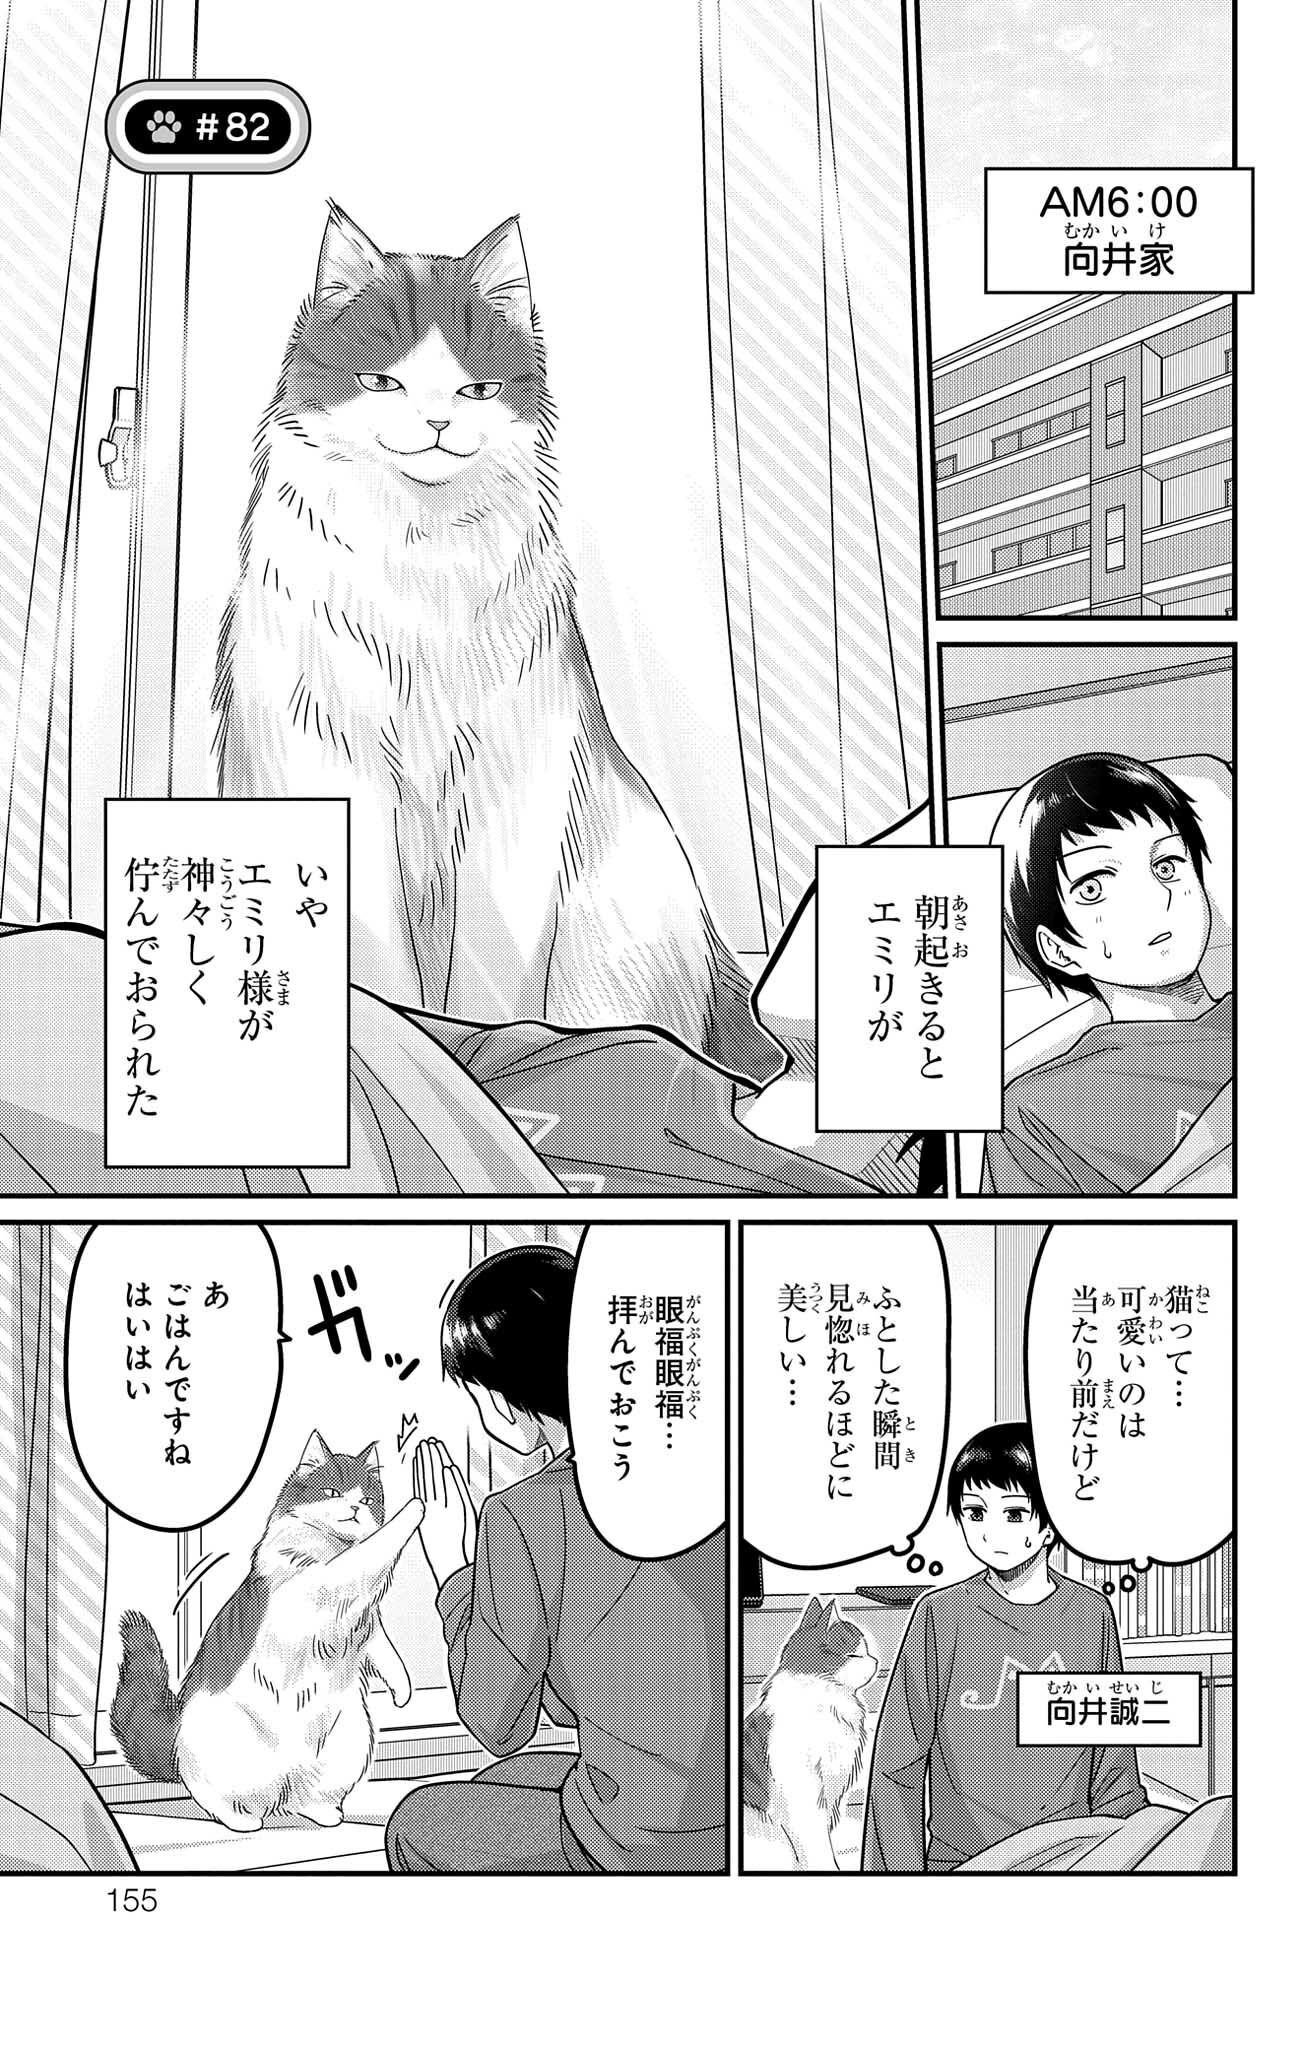 Kawaisugi Crisis - Chapter 82 - Page 1